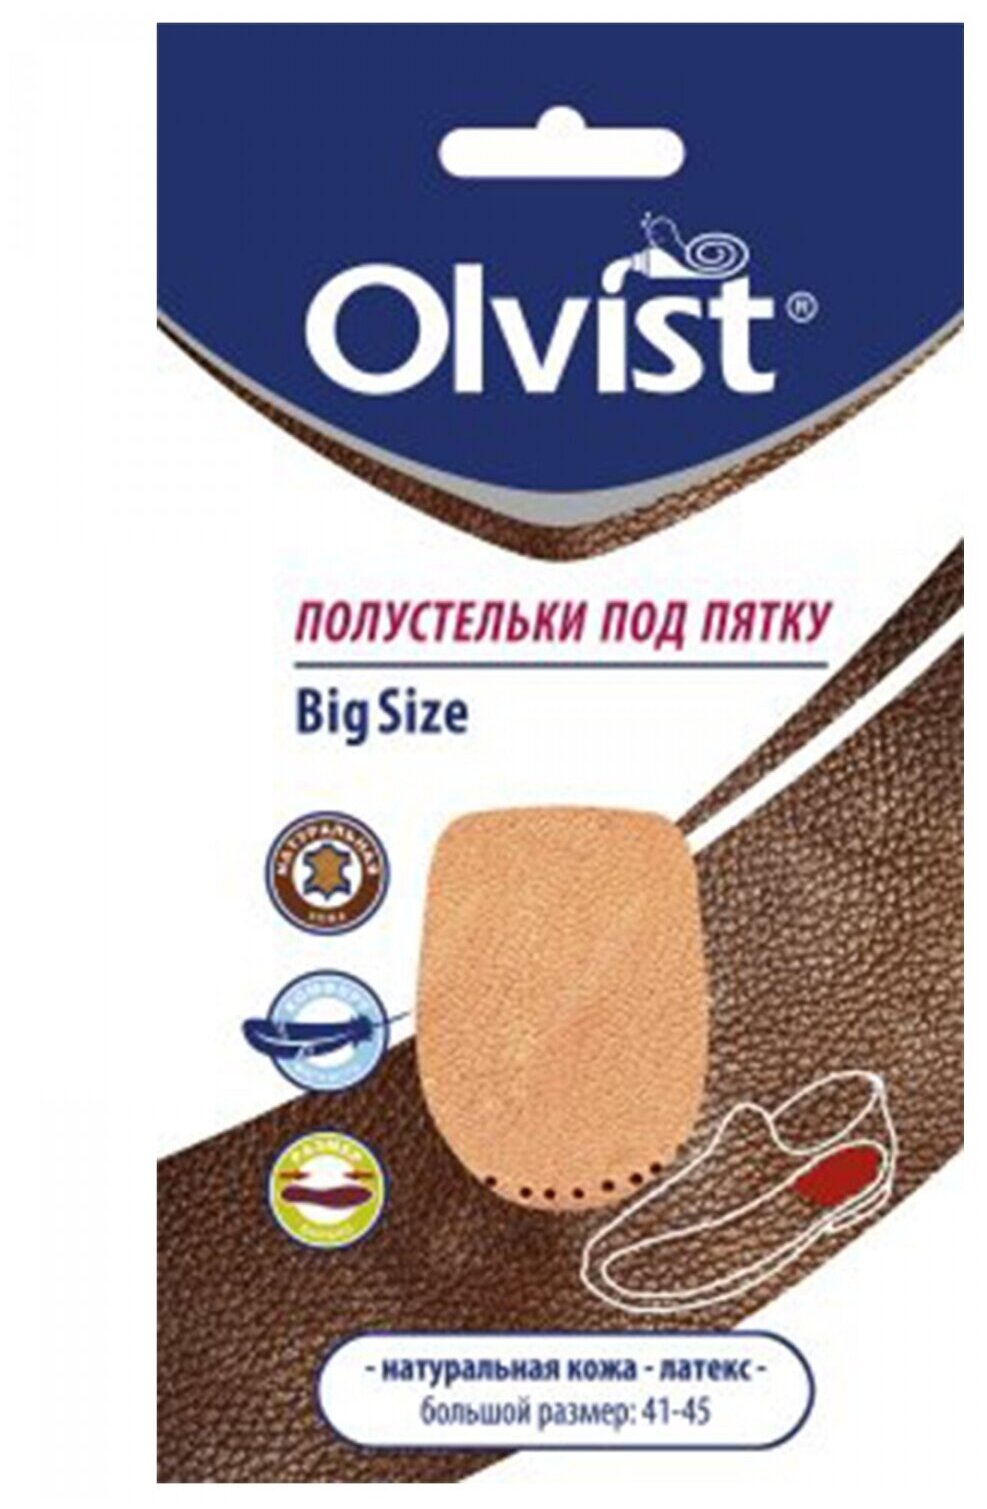 Olvist Полустельки под пятку (кожа+латекс) мужской размер 2 шт.